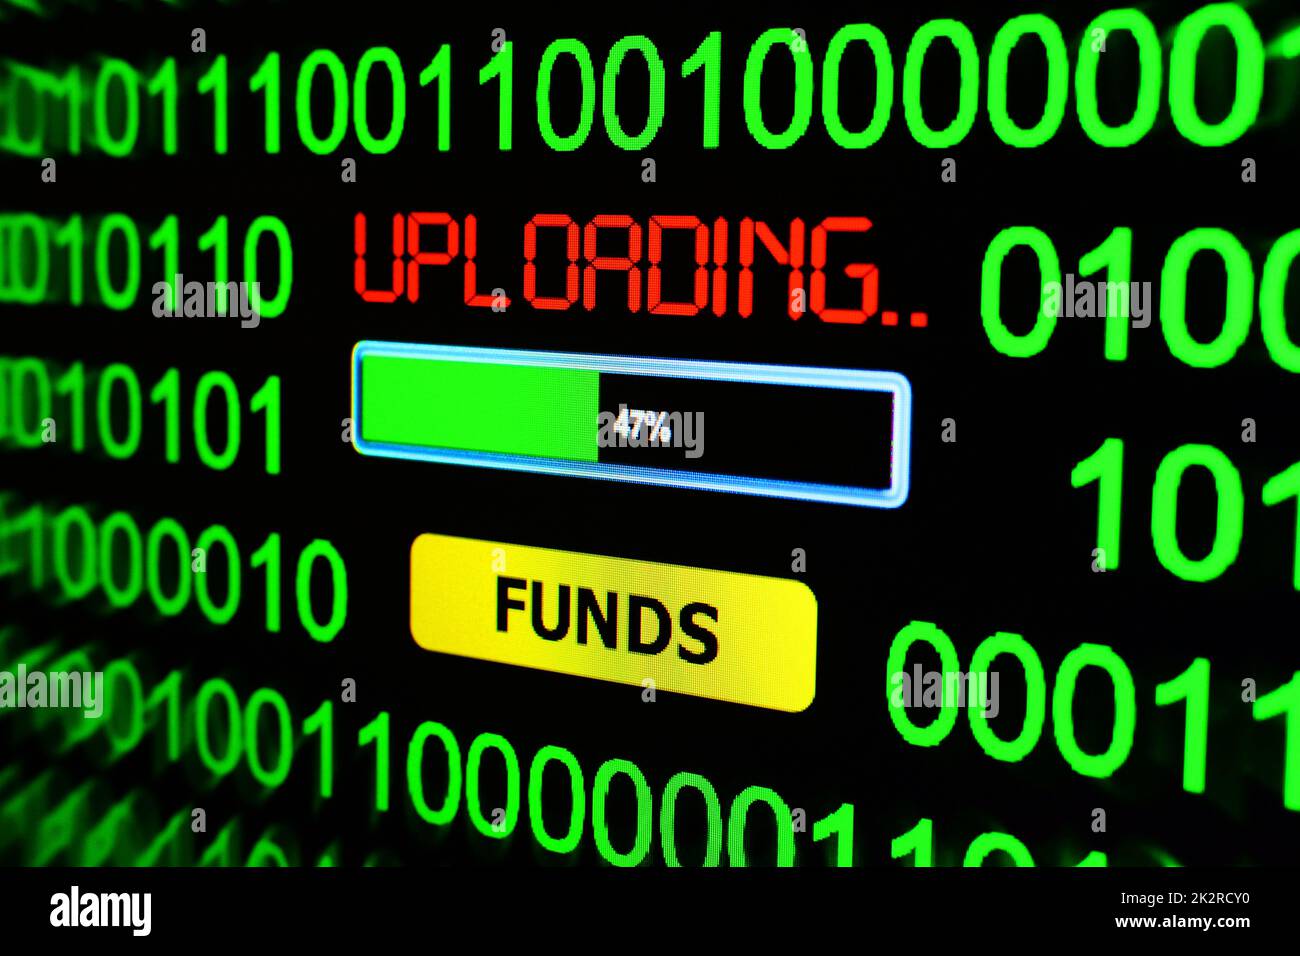 Upload funds Stock Photo